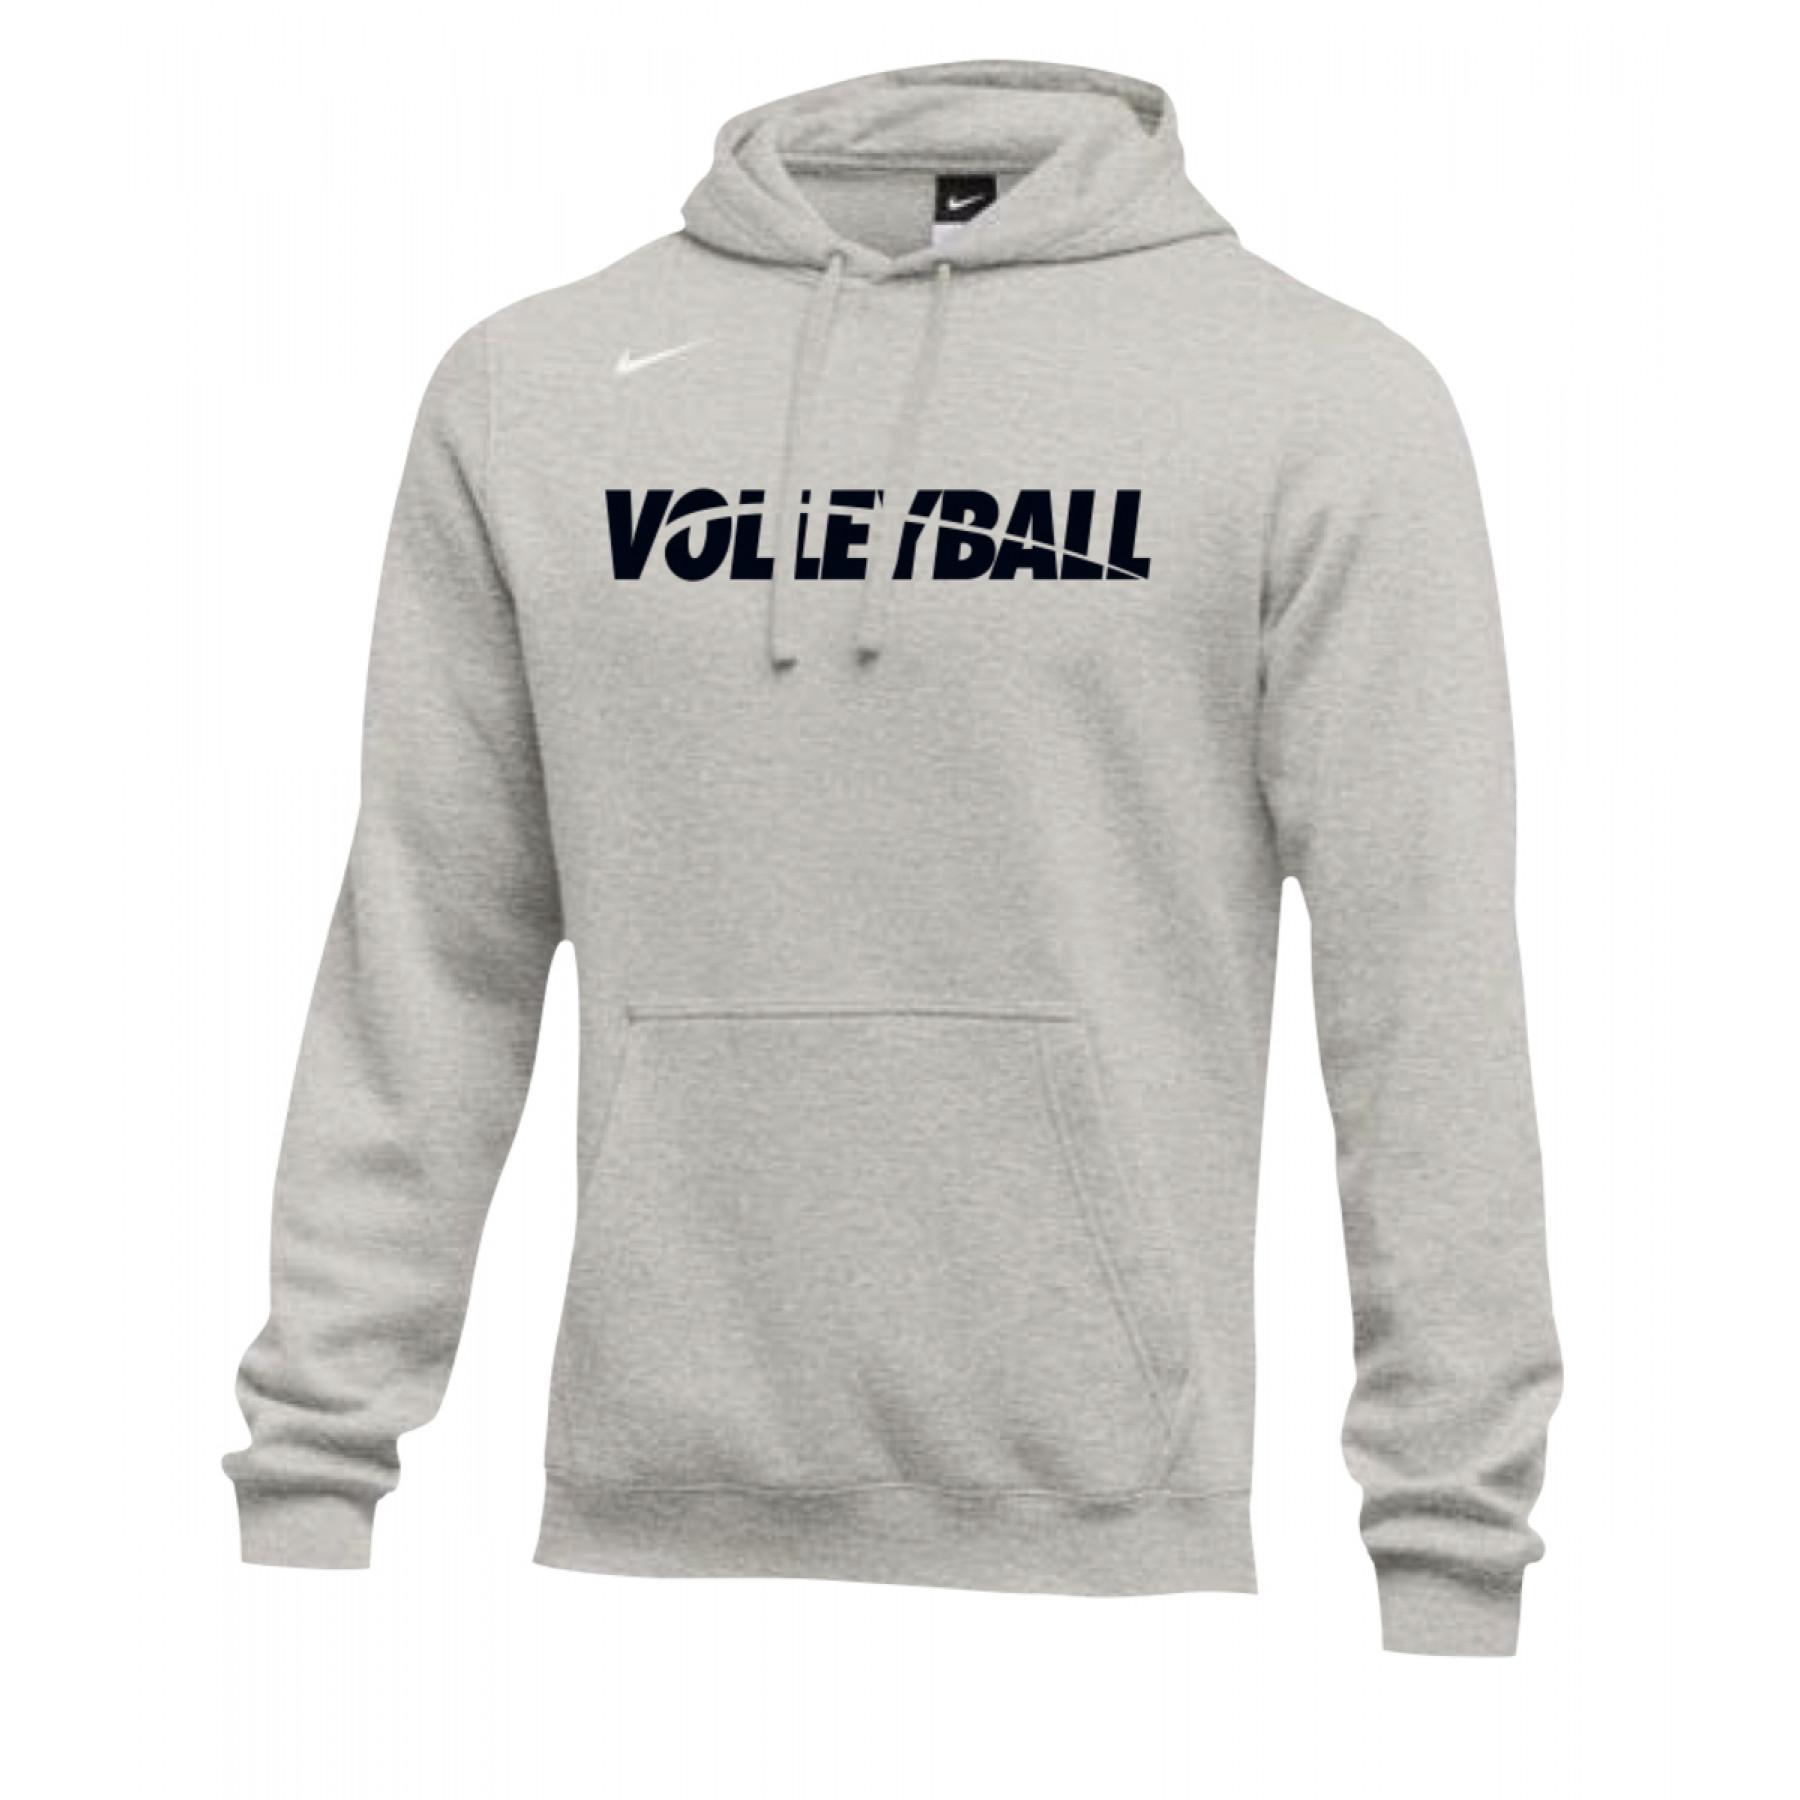 Sweatshirt Nike Volleyball